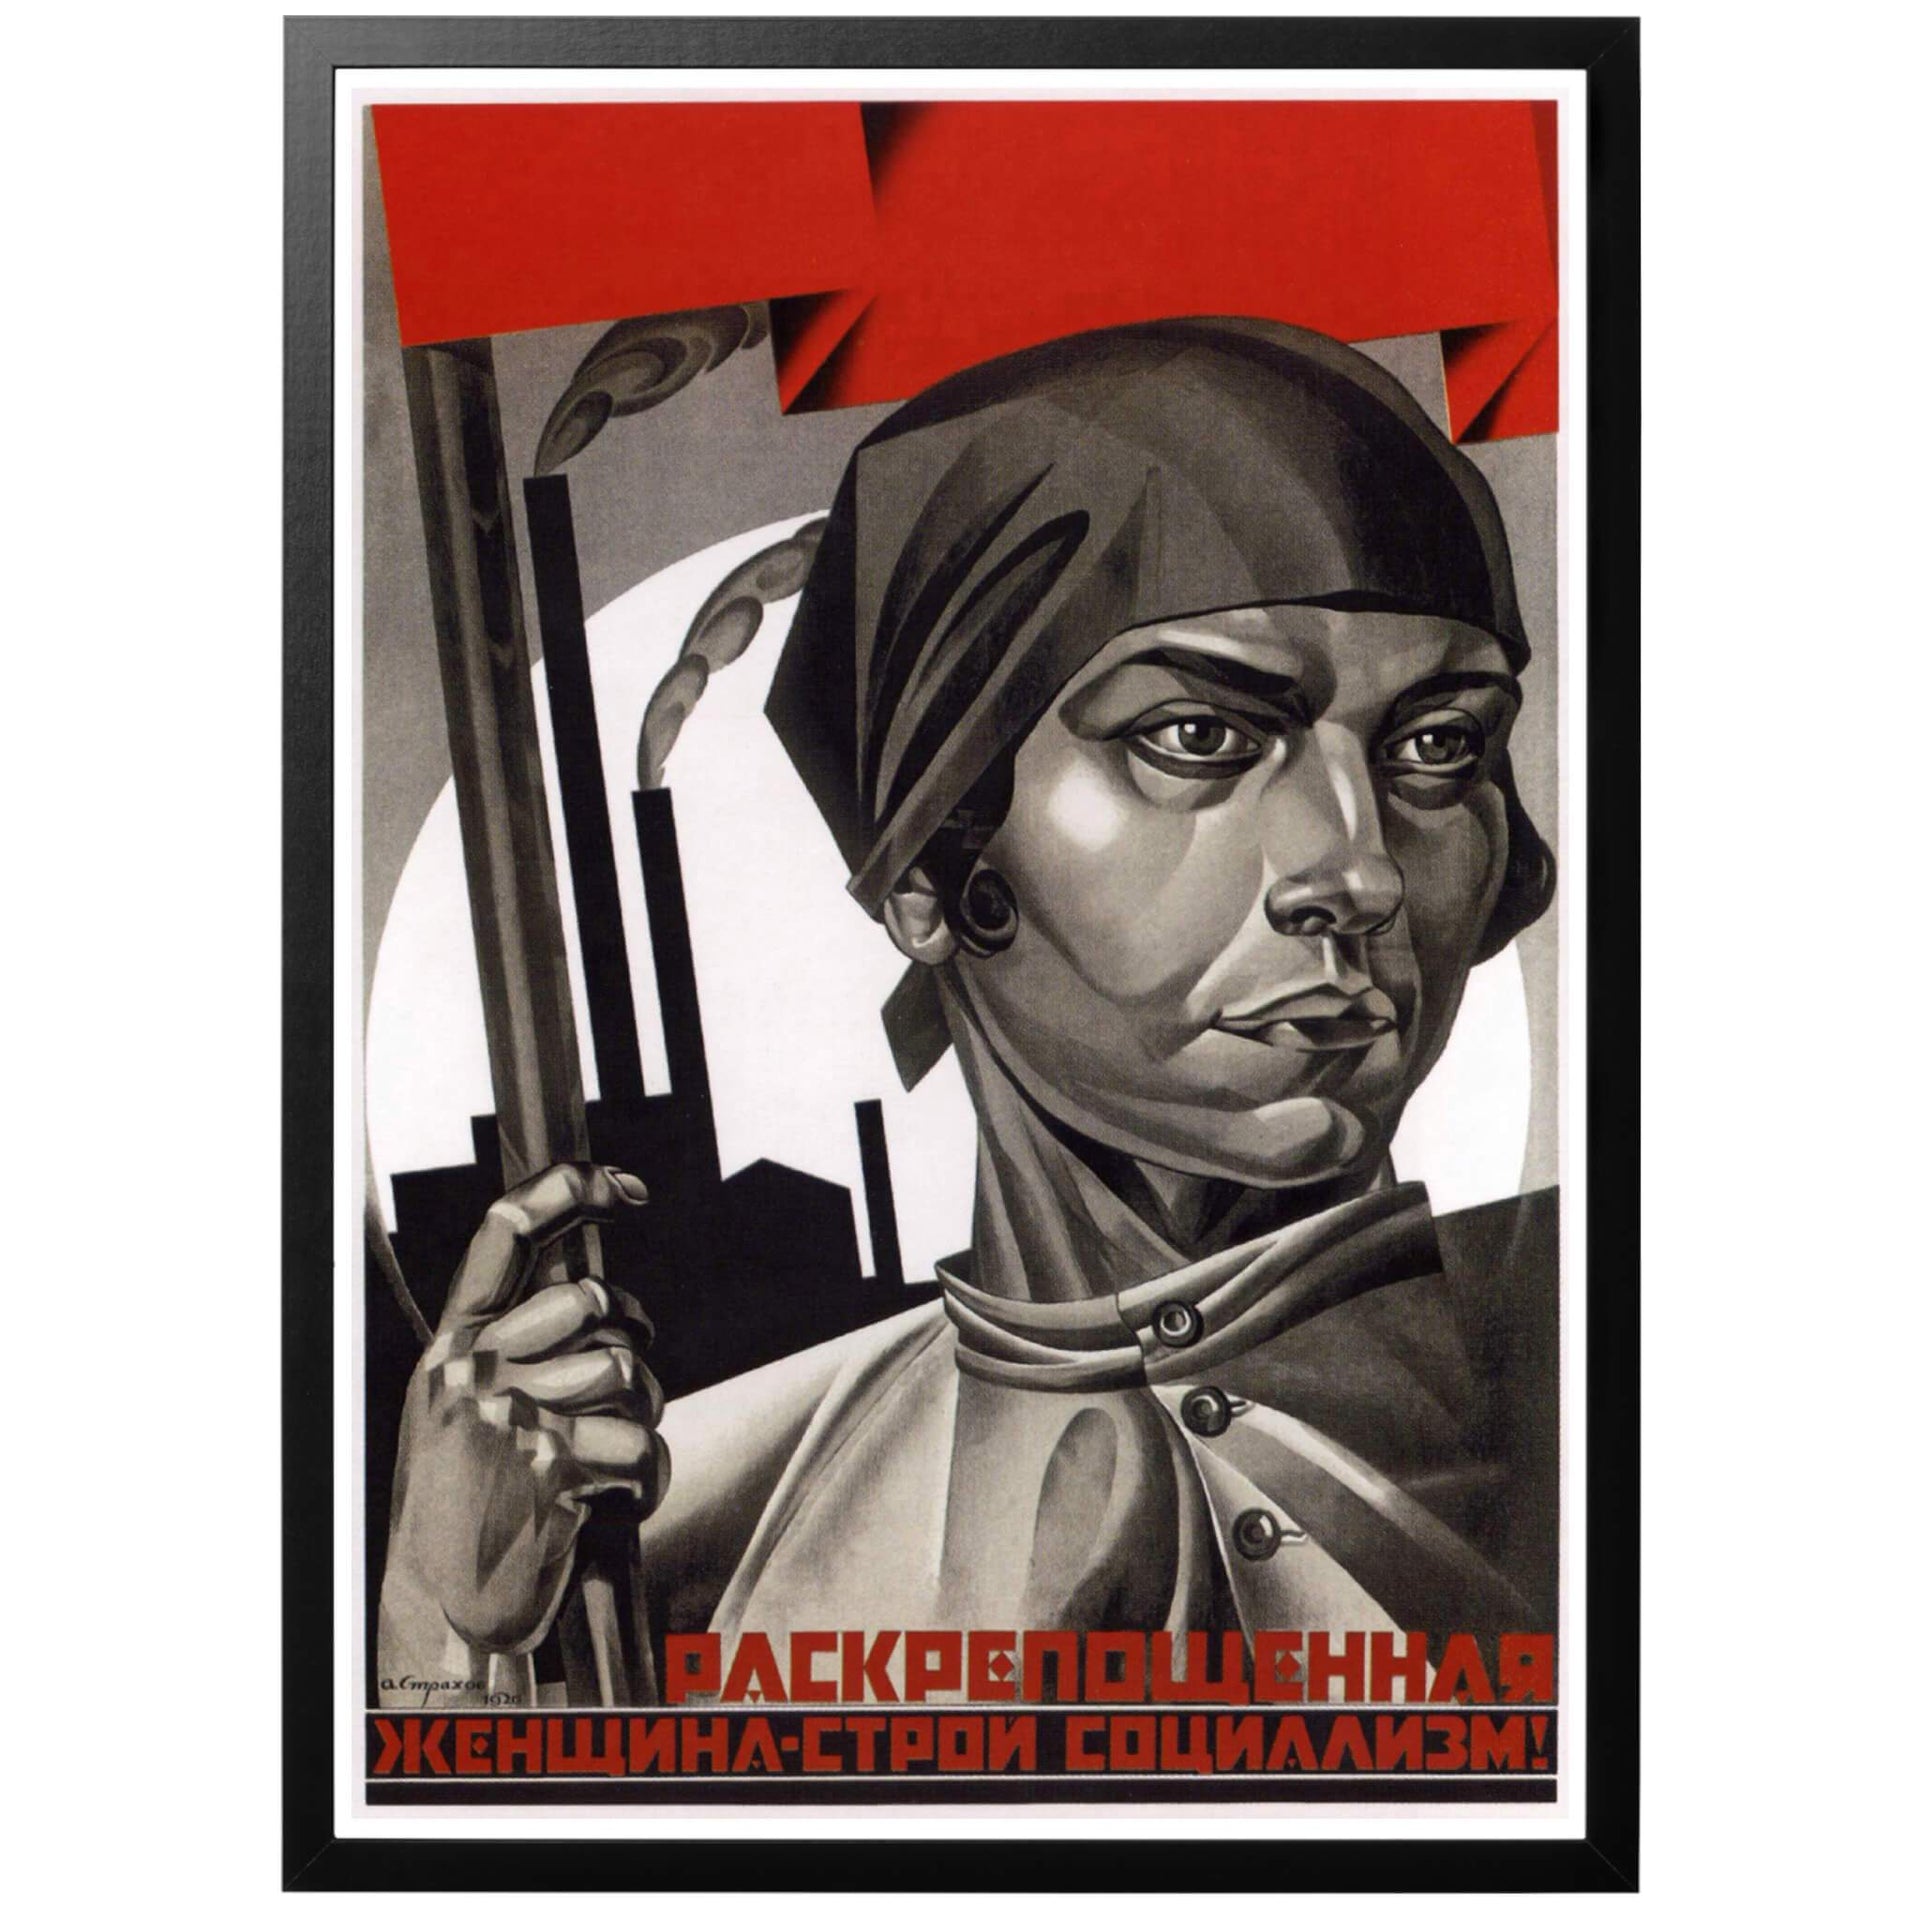 Sovjetisk propagandaposter från 1926. Kvinnors frigörelse ansågs gå hand i hand med socialismen då jämlikhet var en förutsättning för sann kommunism. I bakgrunden syns tung industri i vilken kvinnorna ansågs spela en allt viktigare roll.